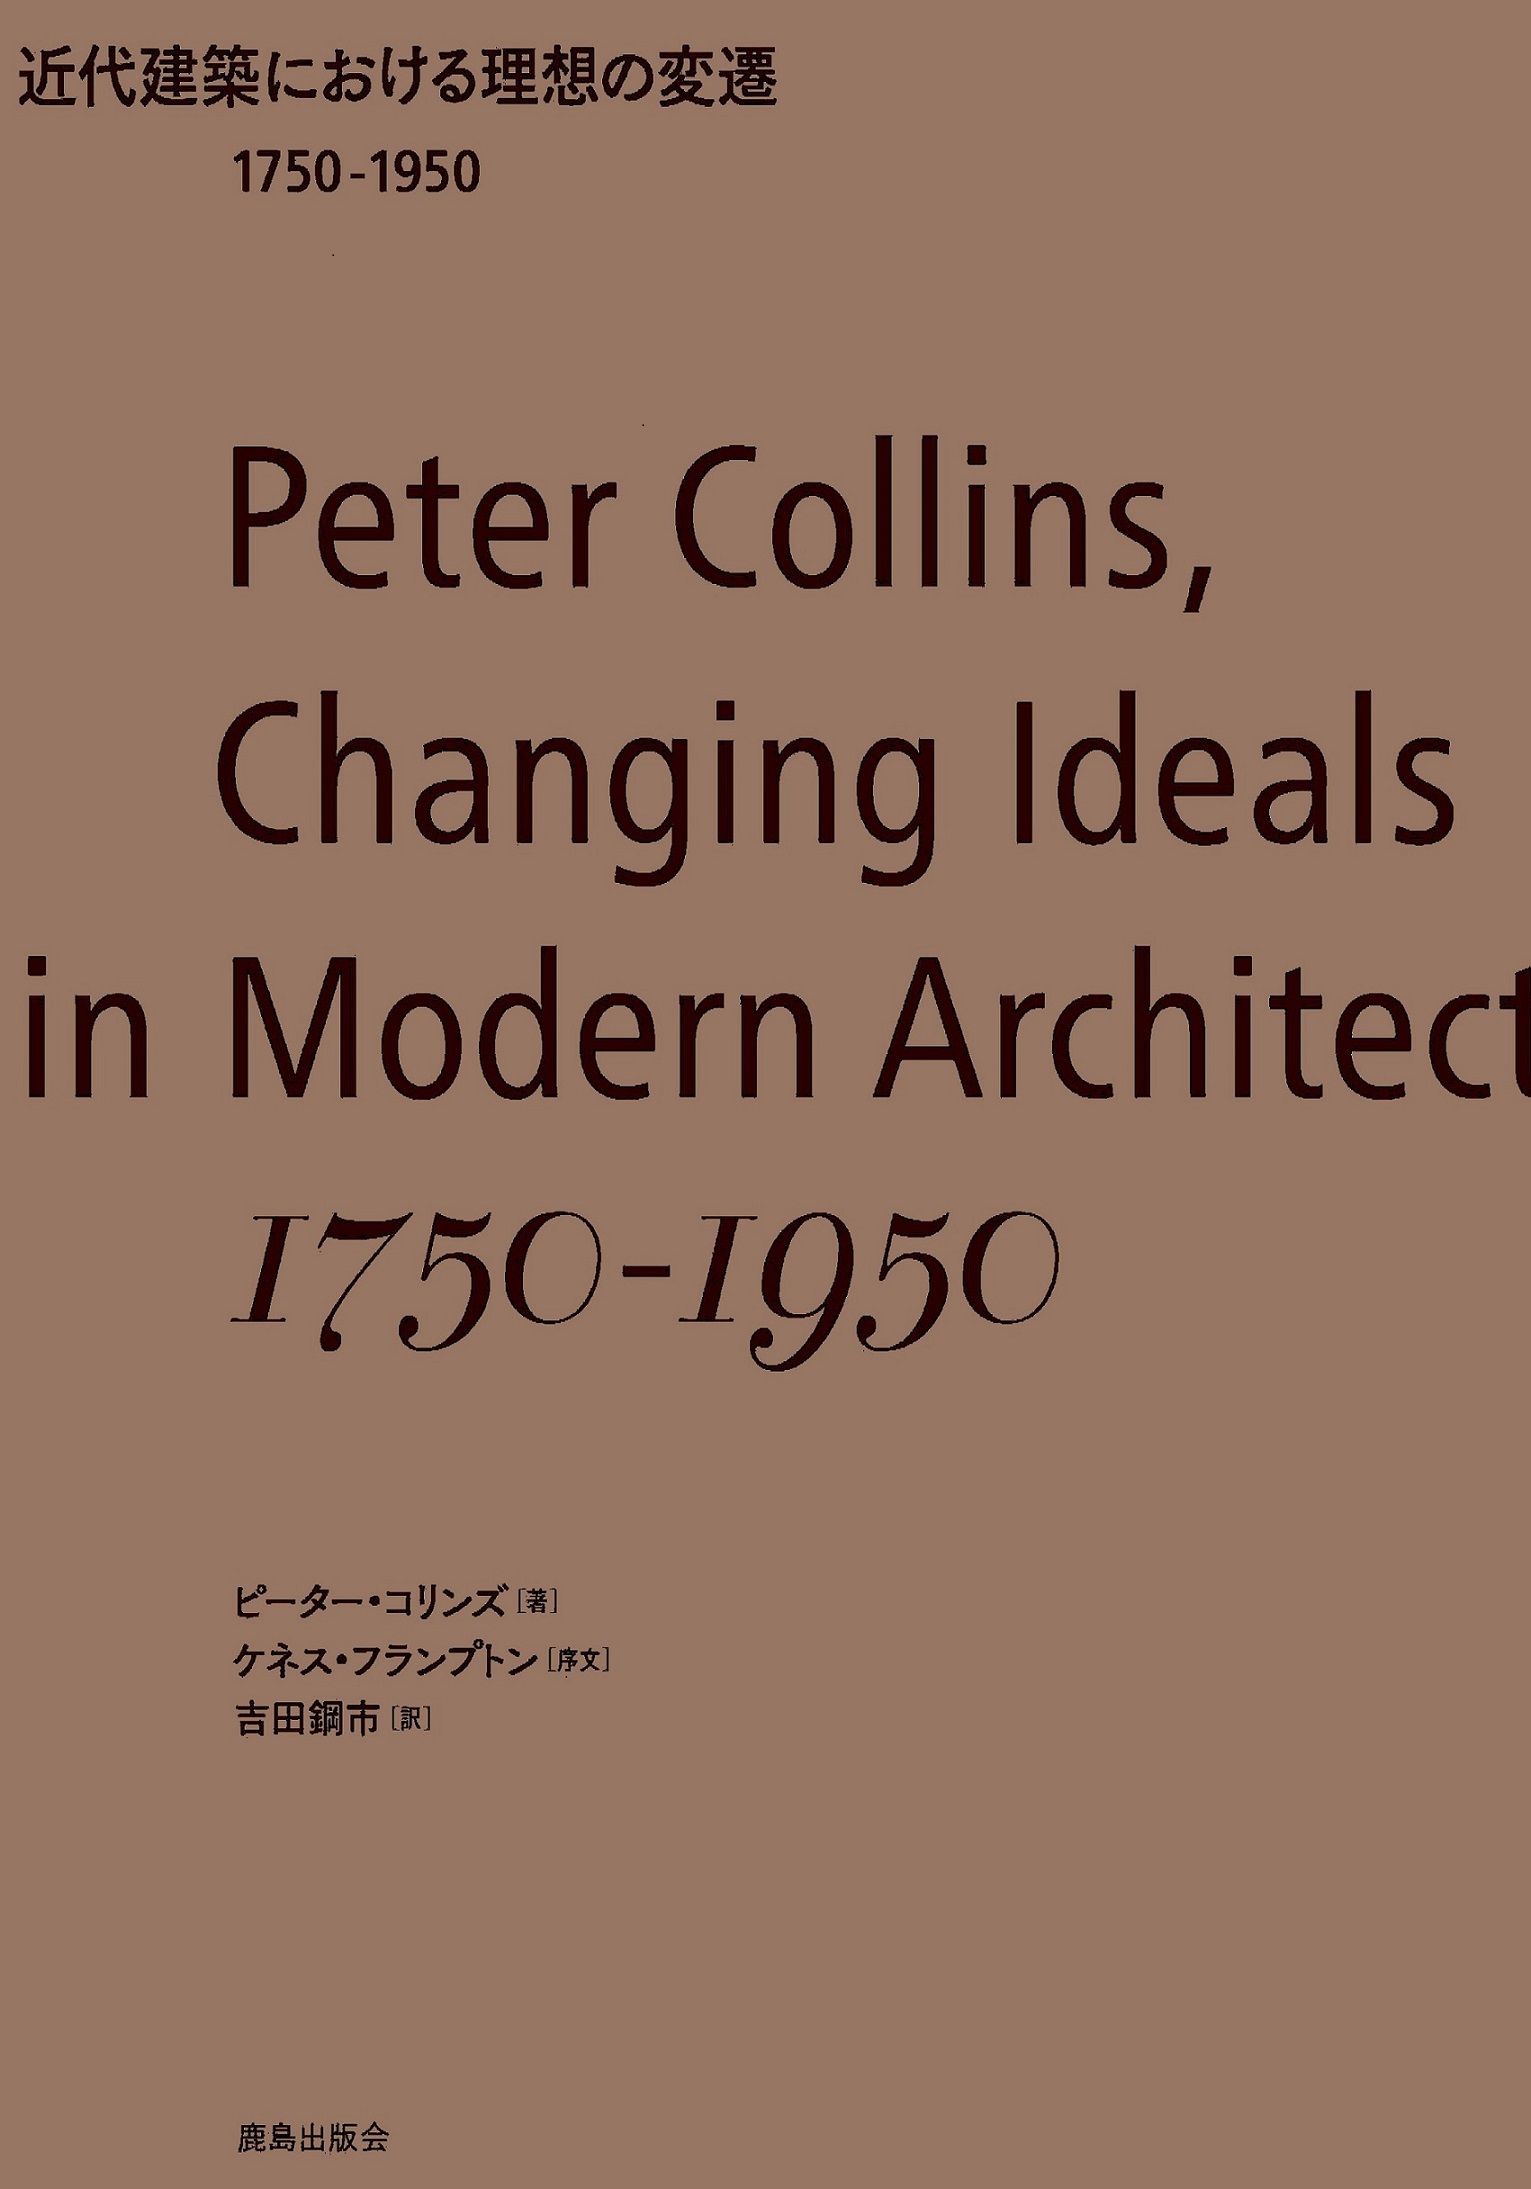 近代建築における理想の変遷1750-1950の商品画像